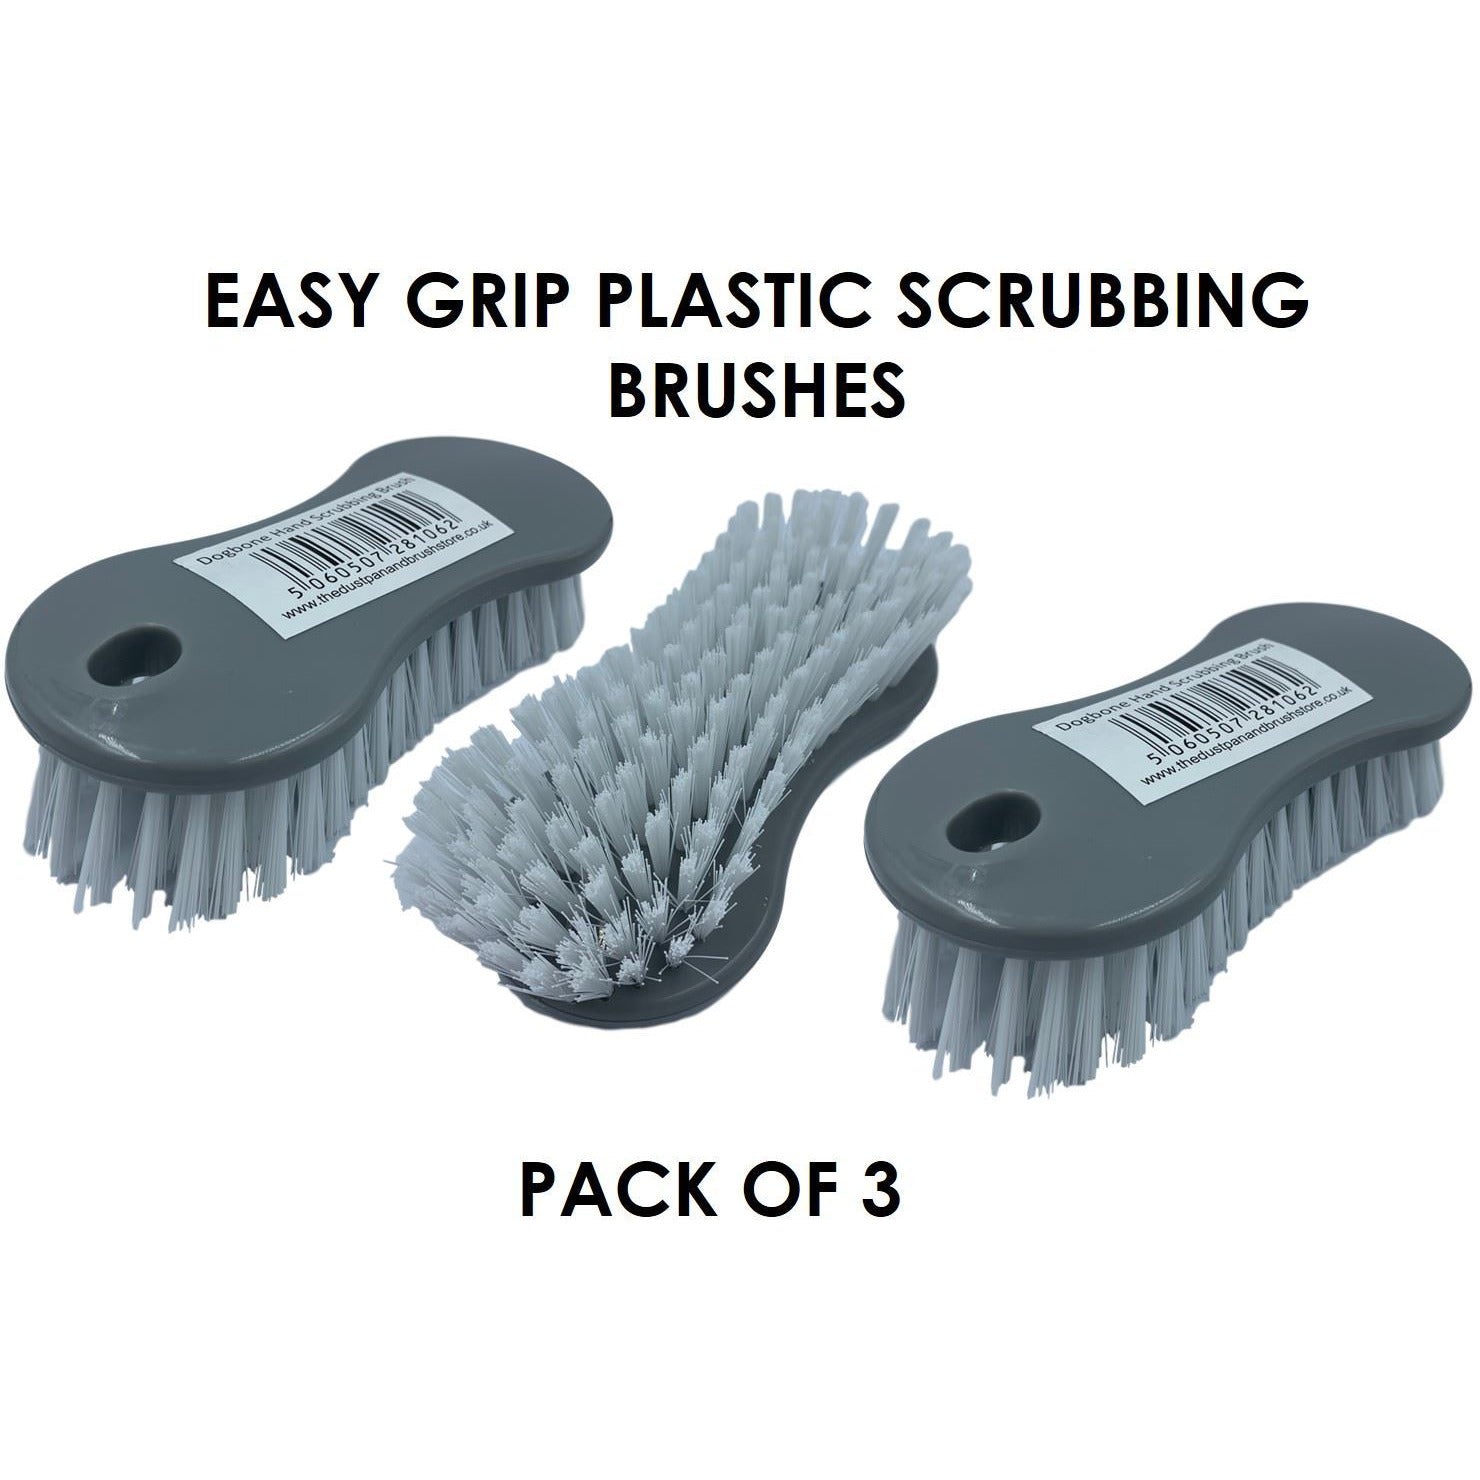 Dogbone Scrubbing Brush Pack of 3 Hand Plastic Scrub Brush with Stiff Bristles - The Dustpan and Brush Store